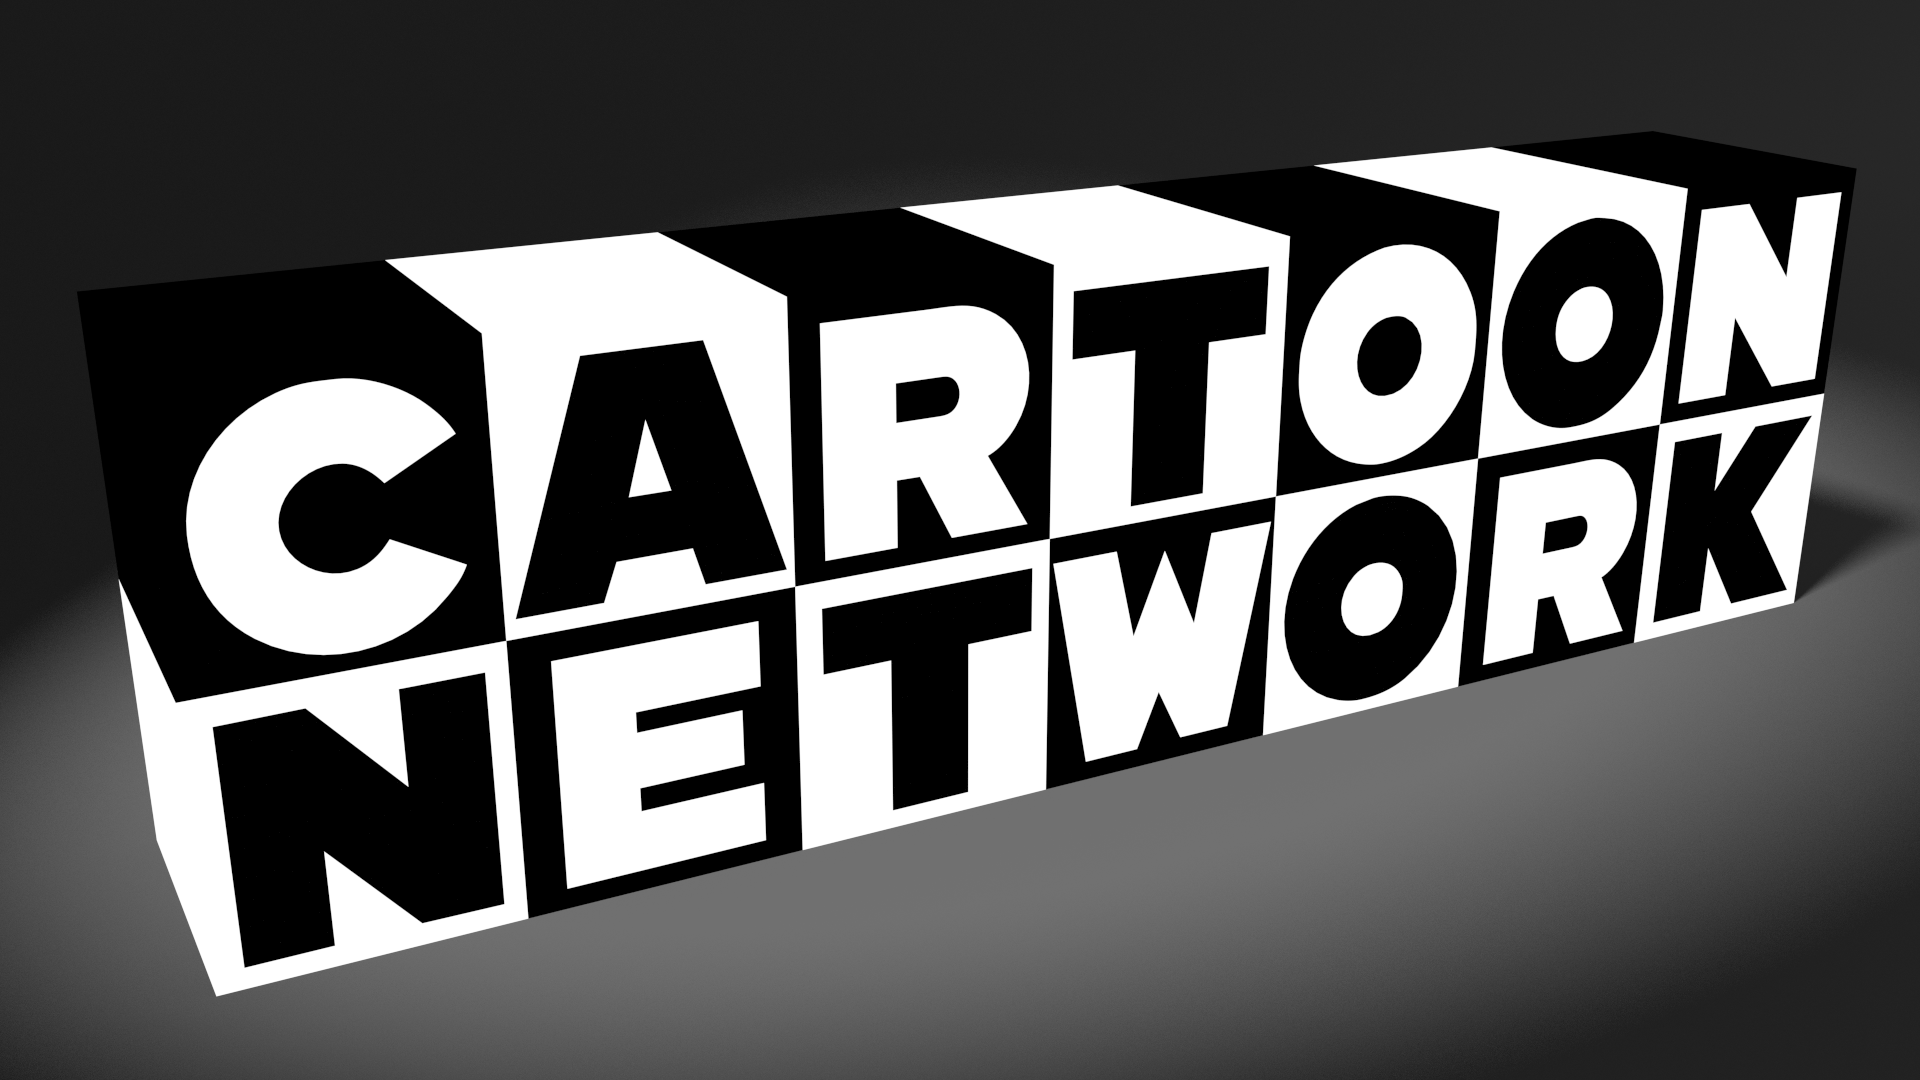 Cartoon Network Backgrounds Free Download Wallpapercraft